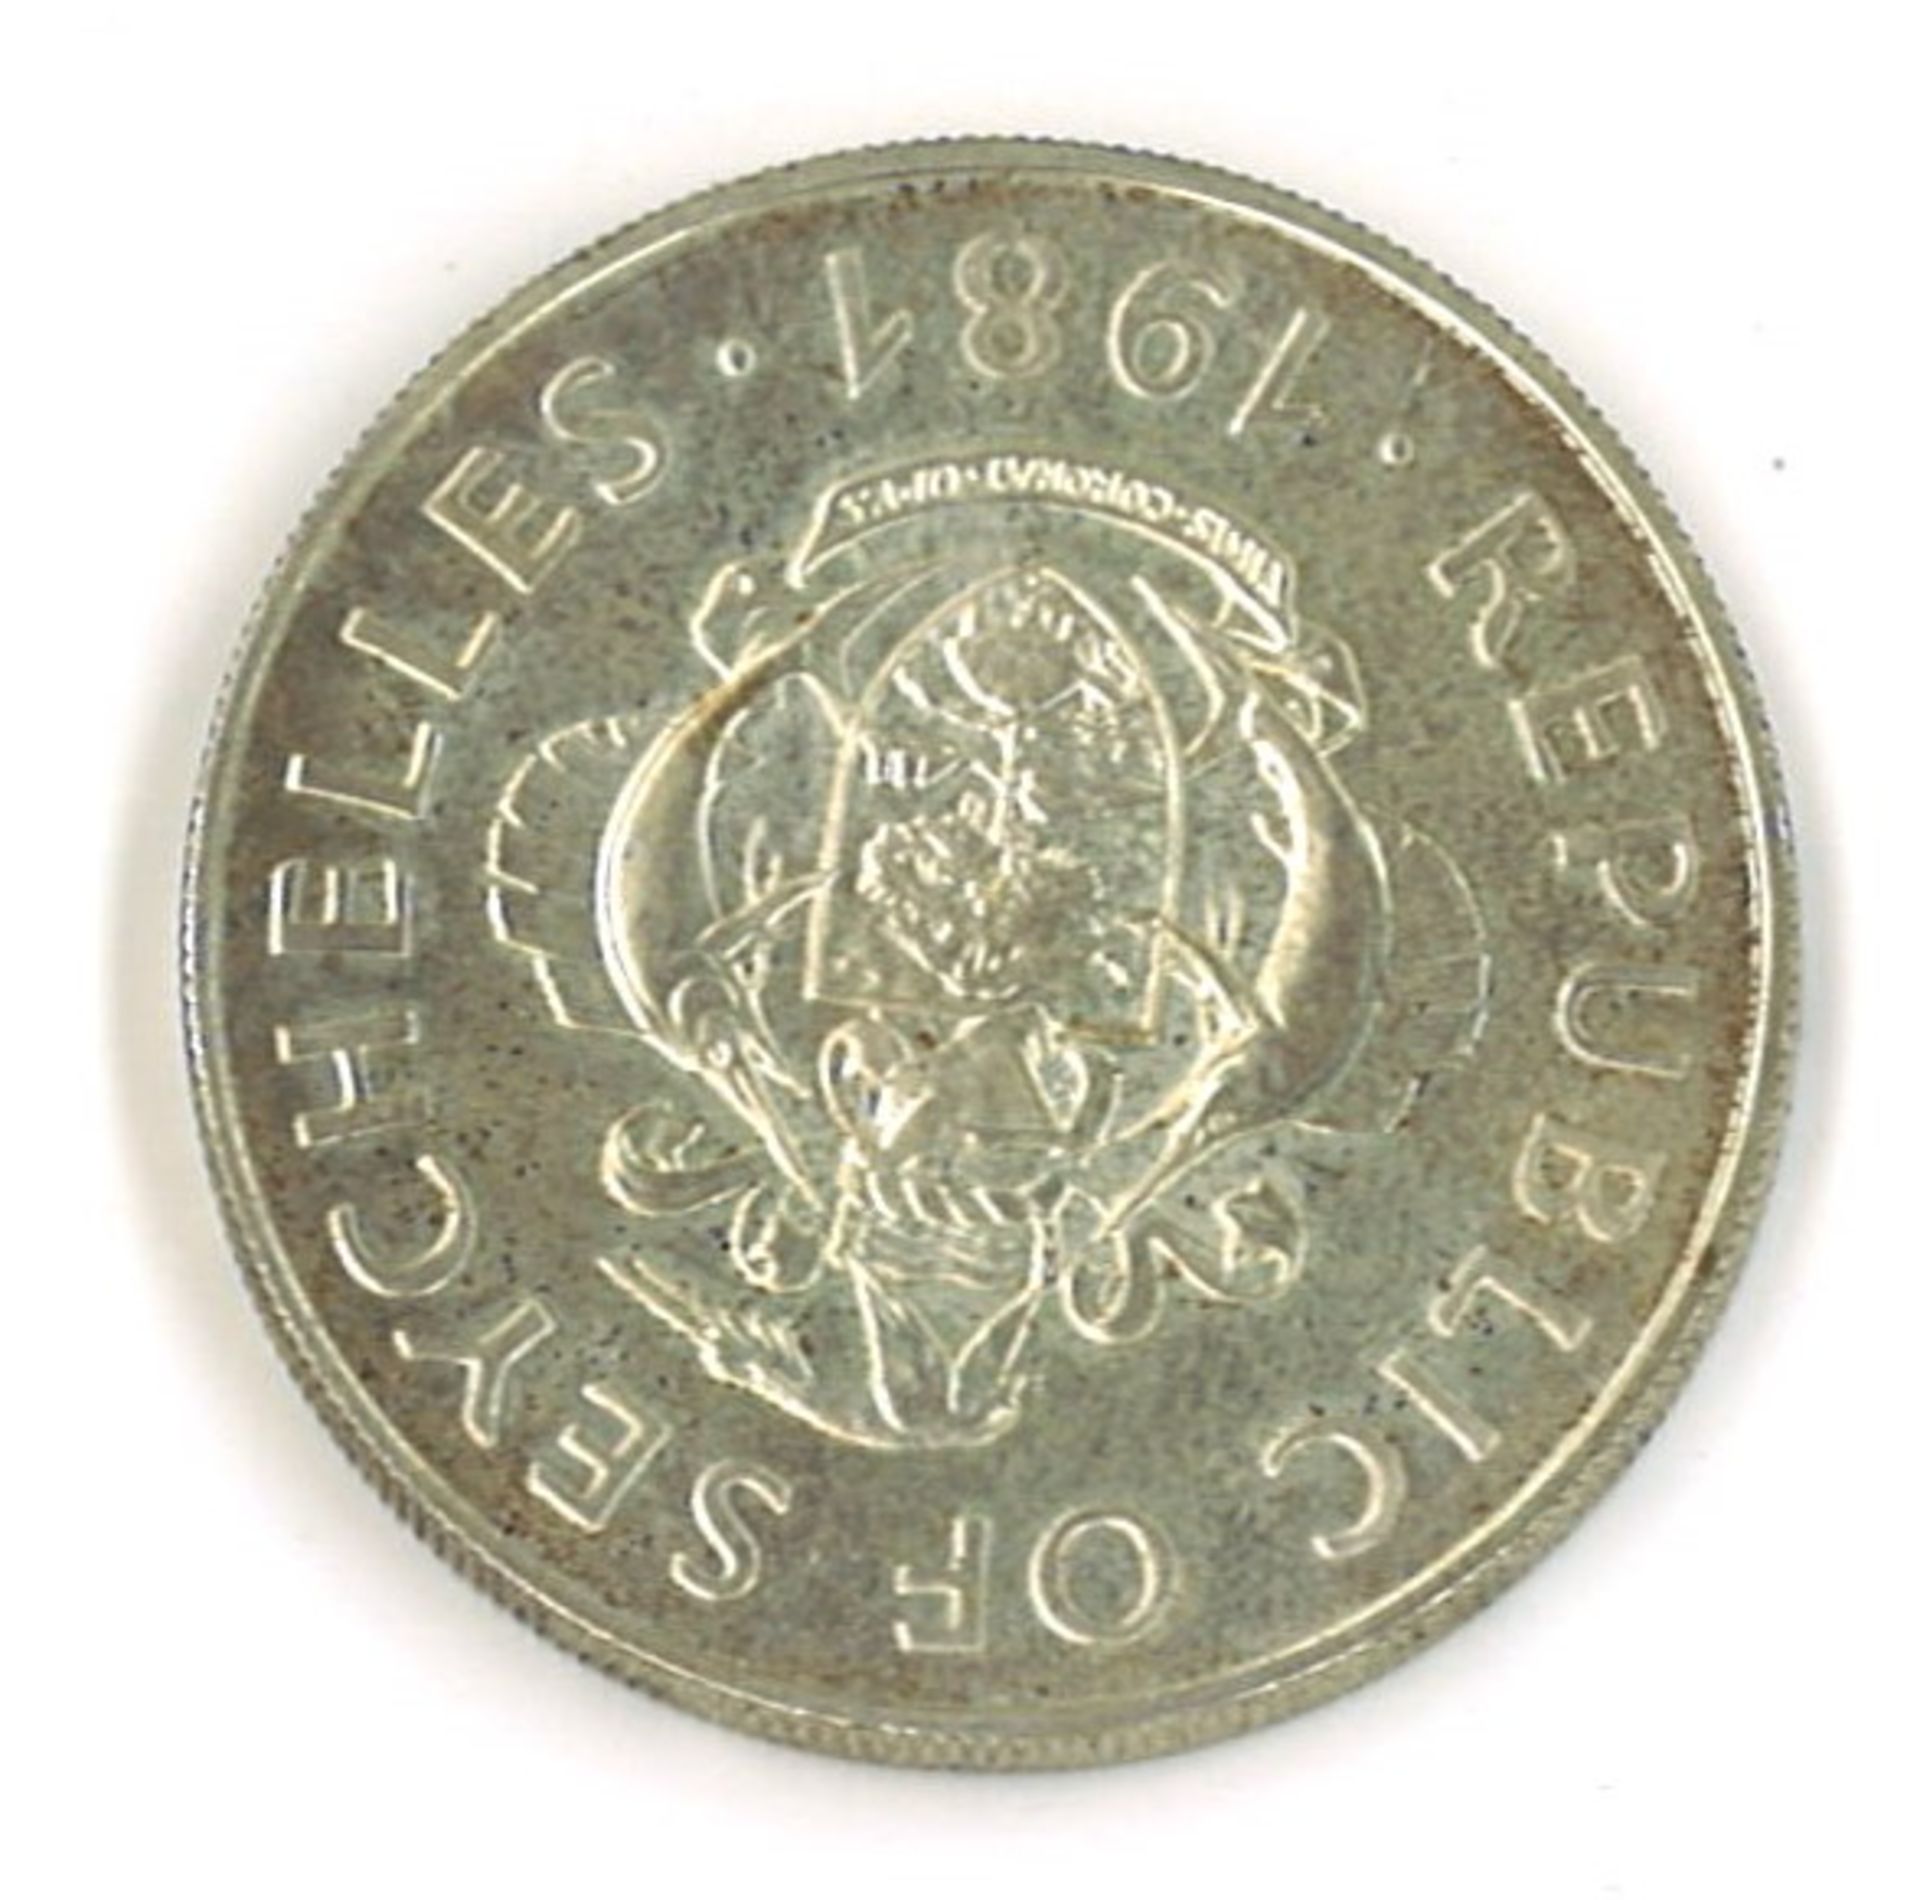 Seychellen 100 Rupien 1981 Silber "Welternährungstag FAO" Zustand: vz